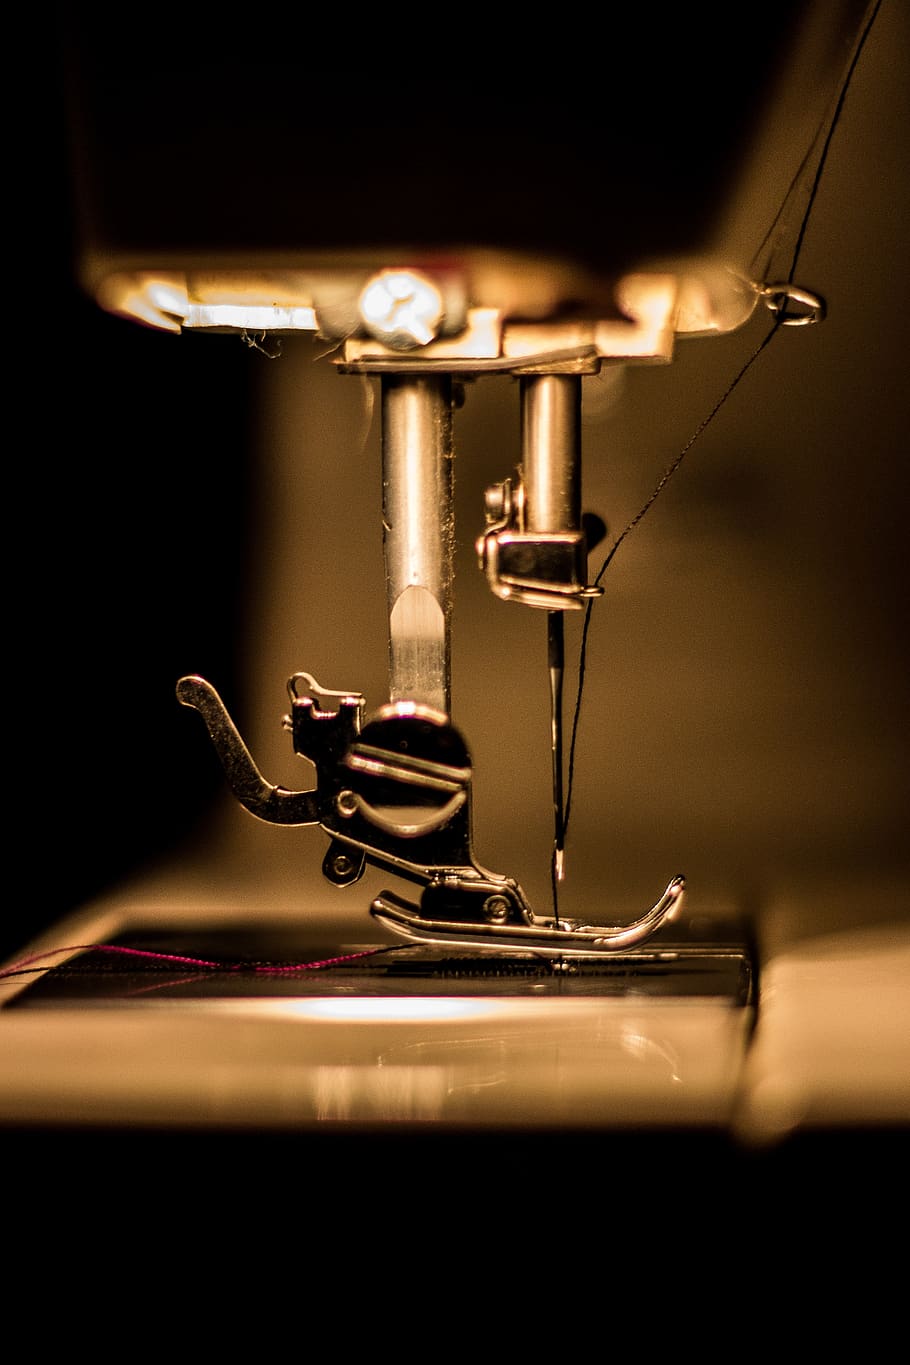 máquina de costura, ferramenta, costurar, tecido, padrão, preto, bordado, branco, funileiro, couro